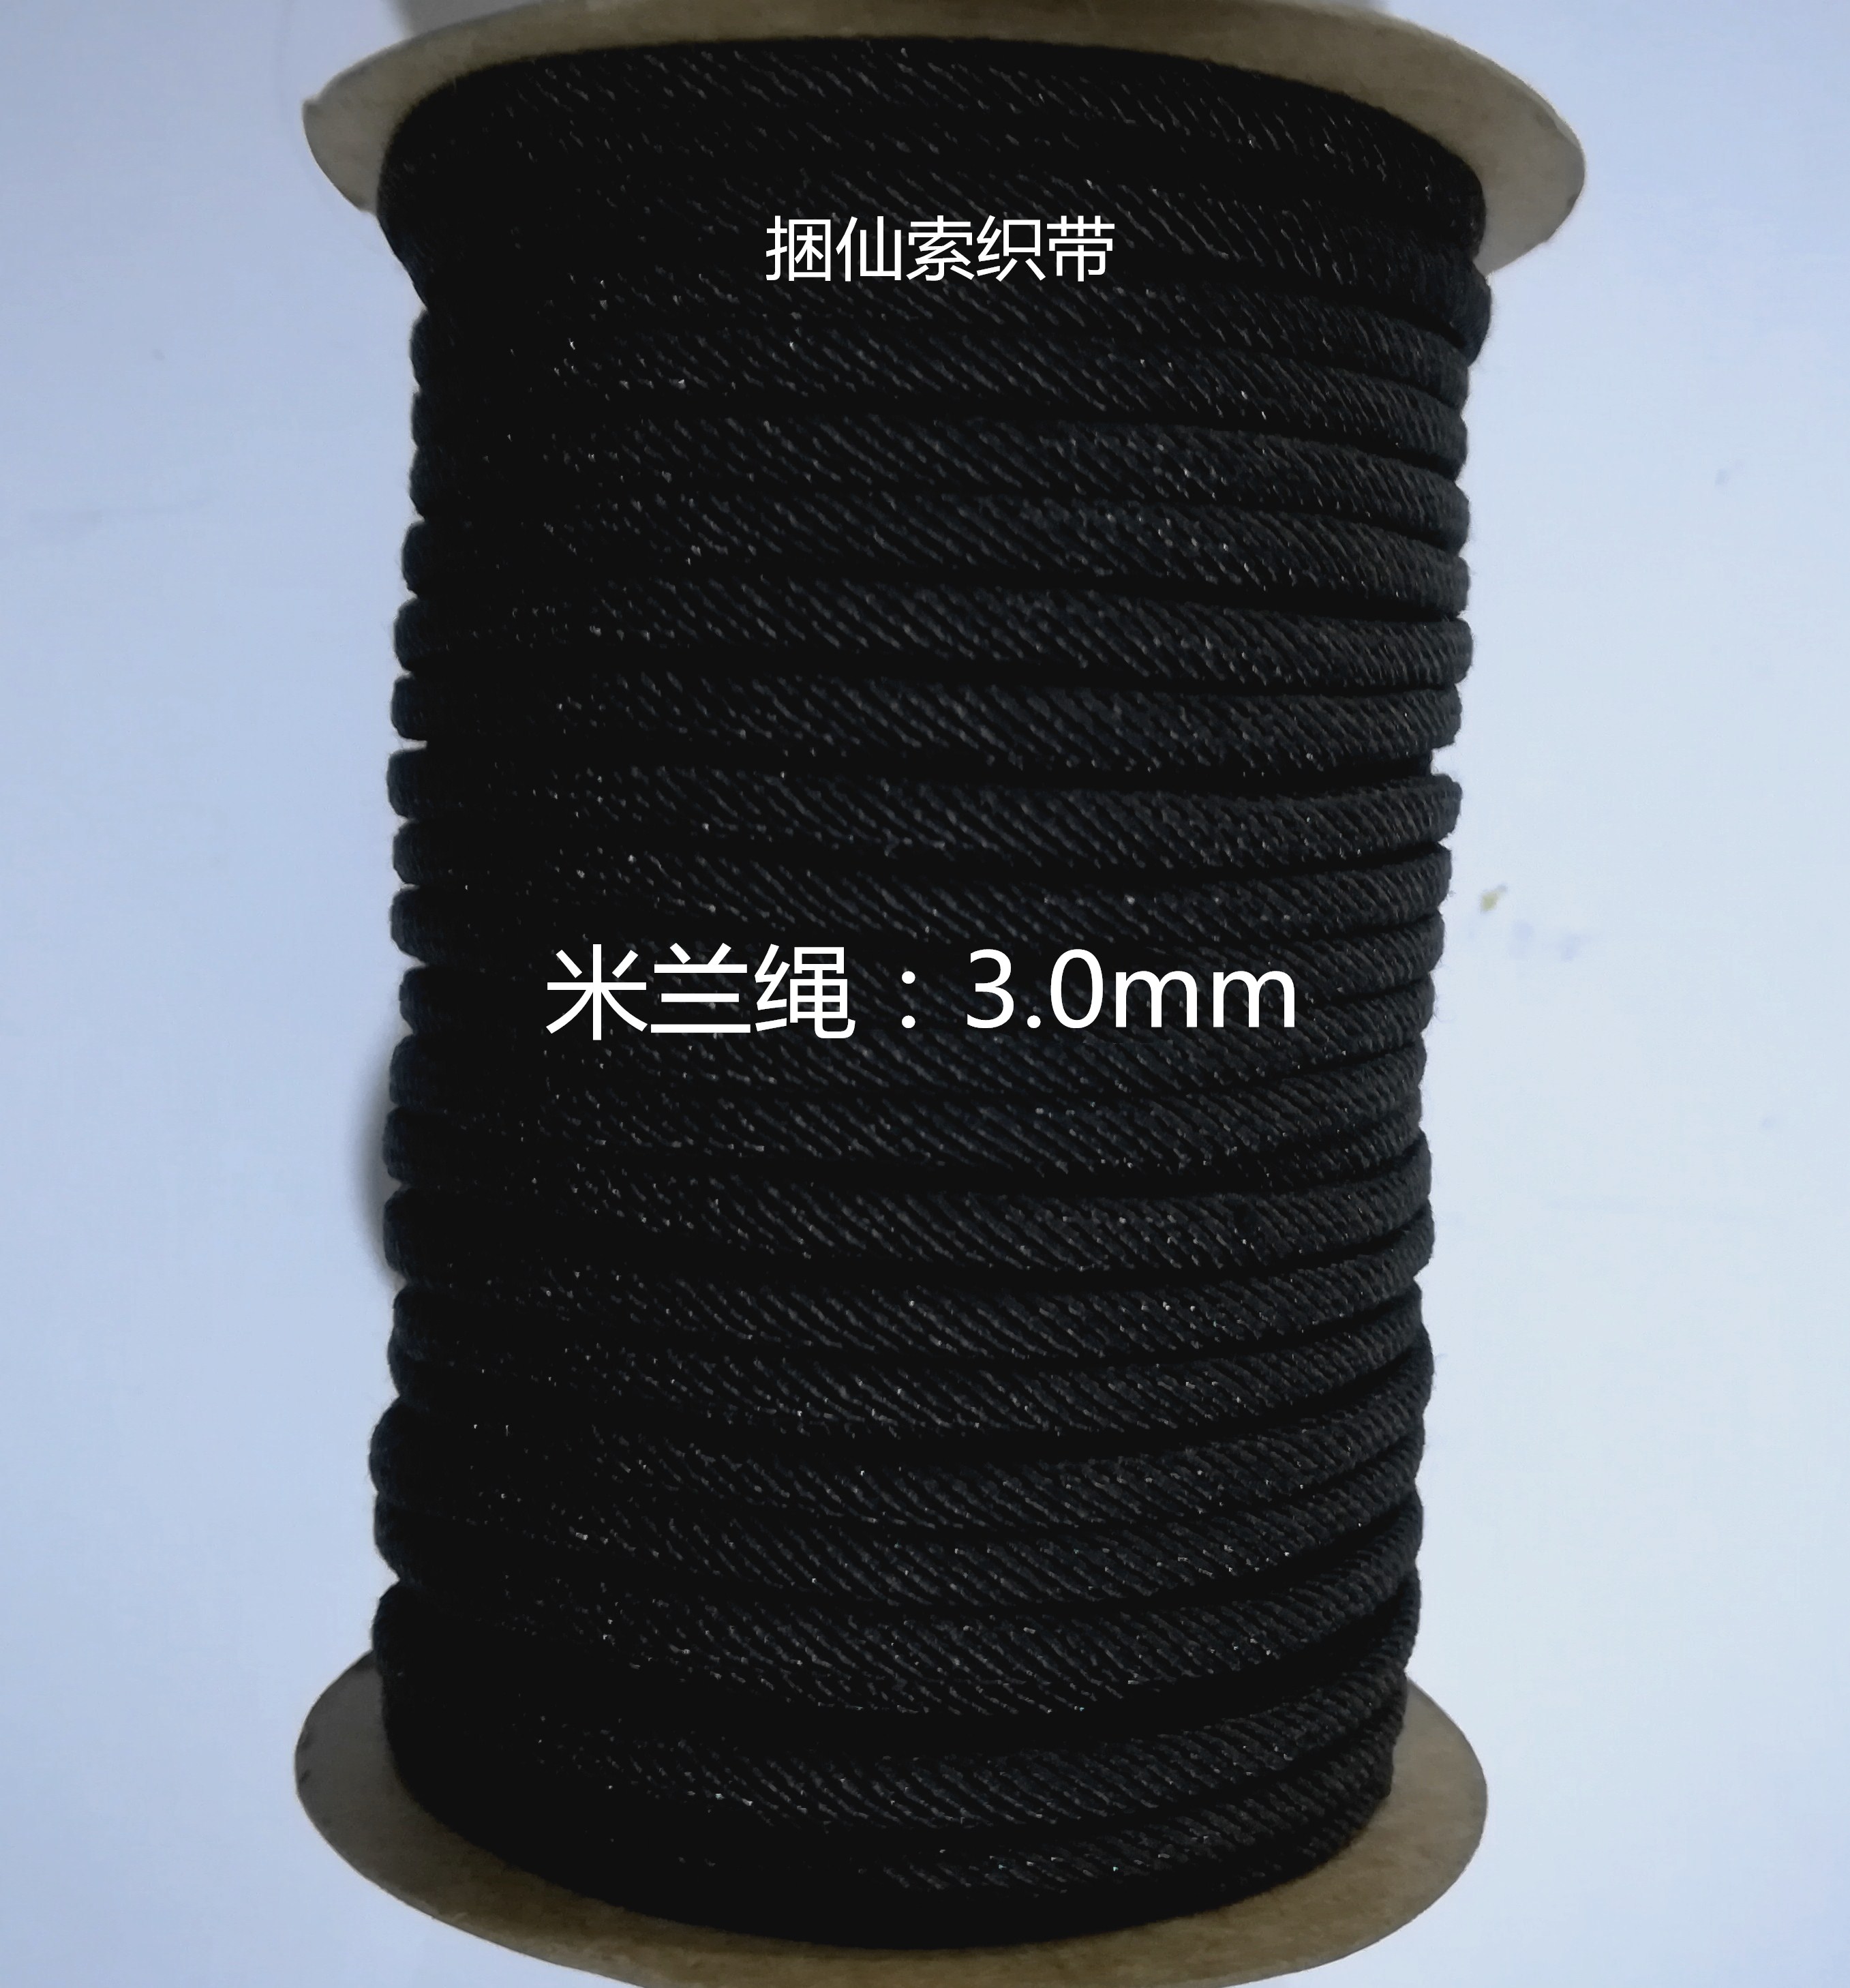 米兰绳3.0mm|优质米兰绳3.0mm供应商|供应优质米兰绳3.0mm厂家|优质米兰绳3.0mm批发价格图片